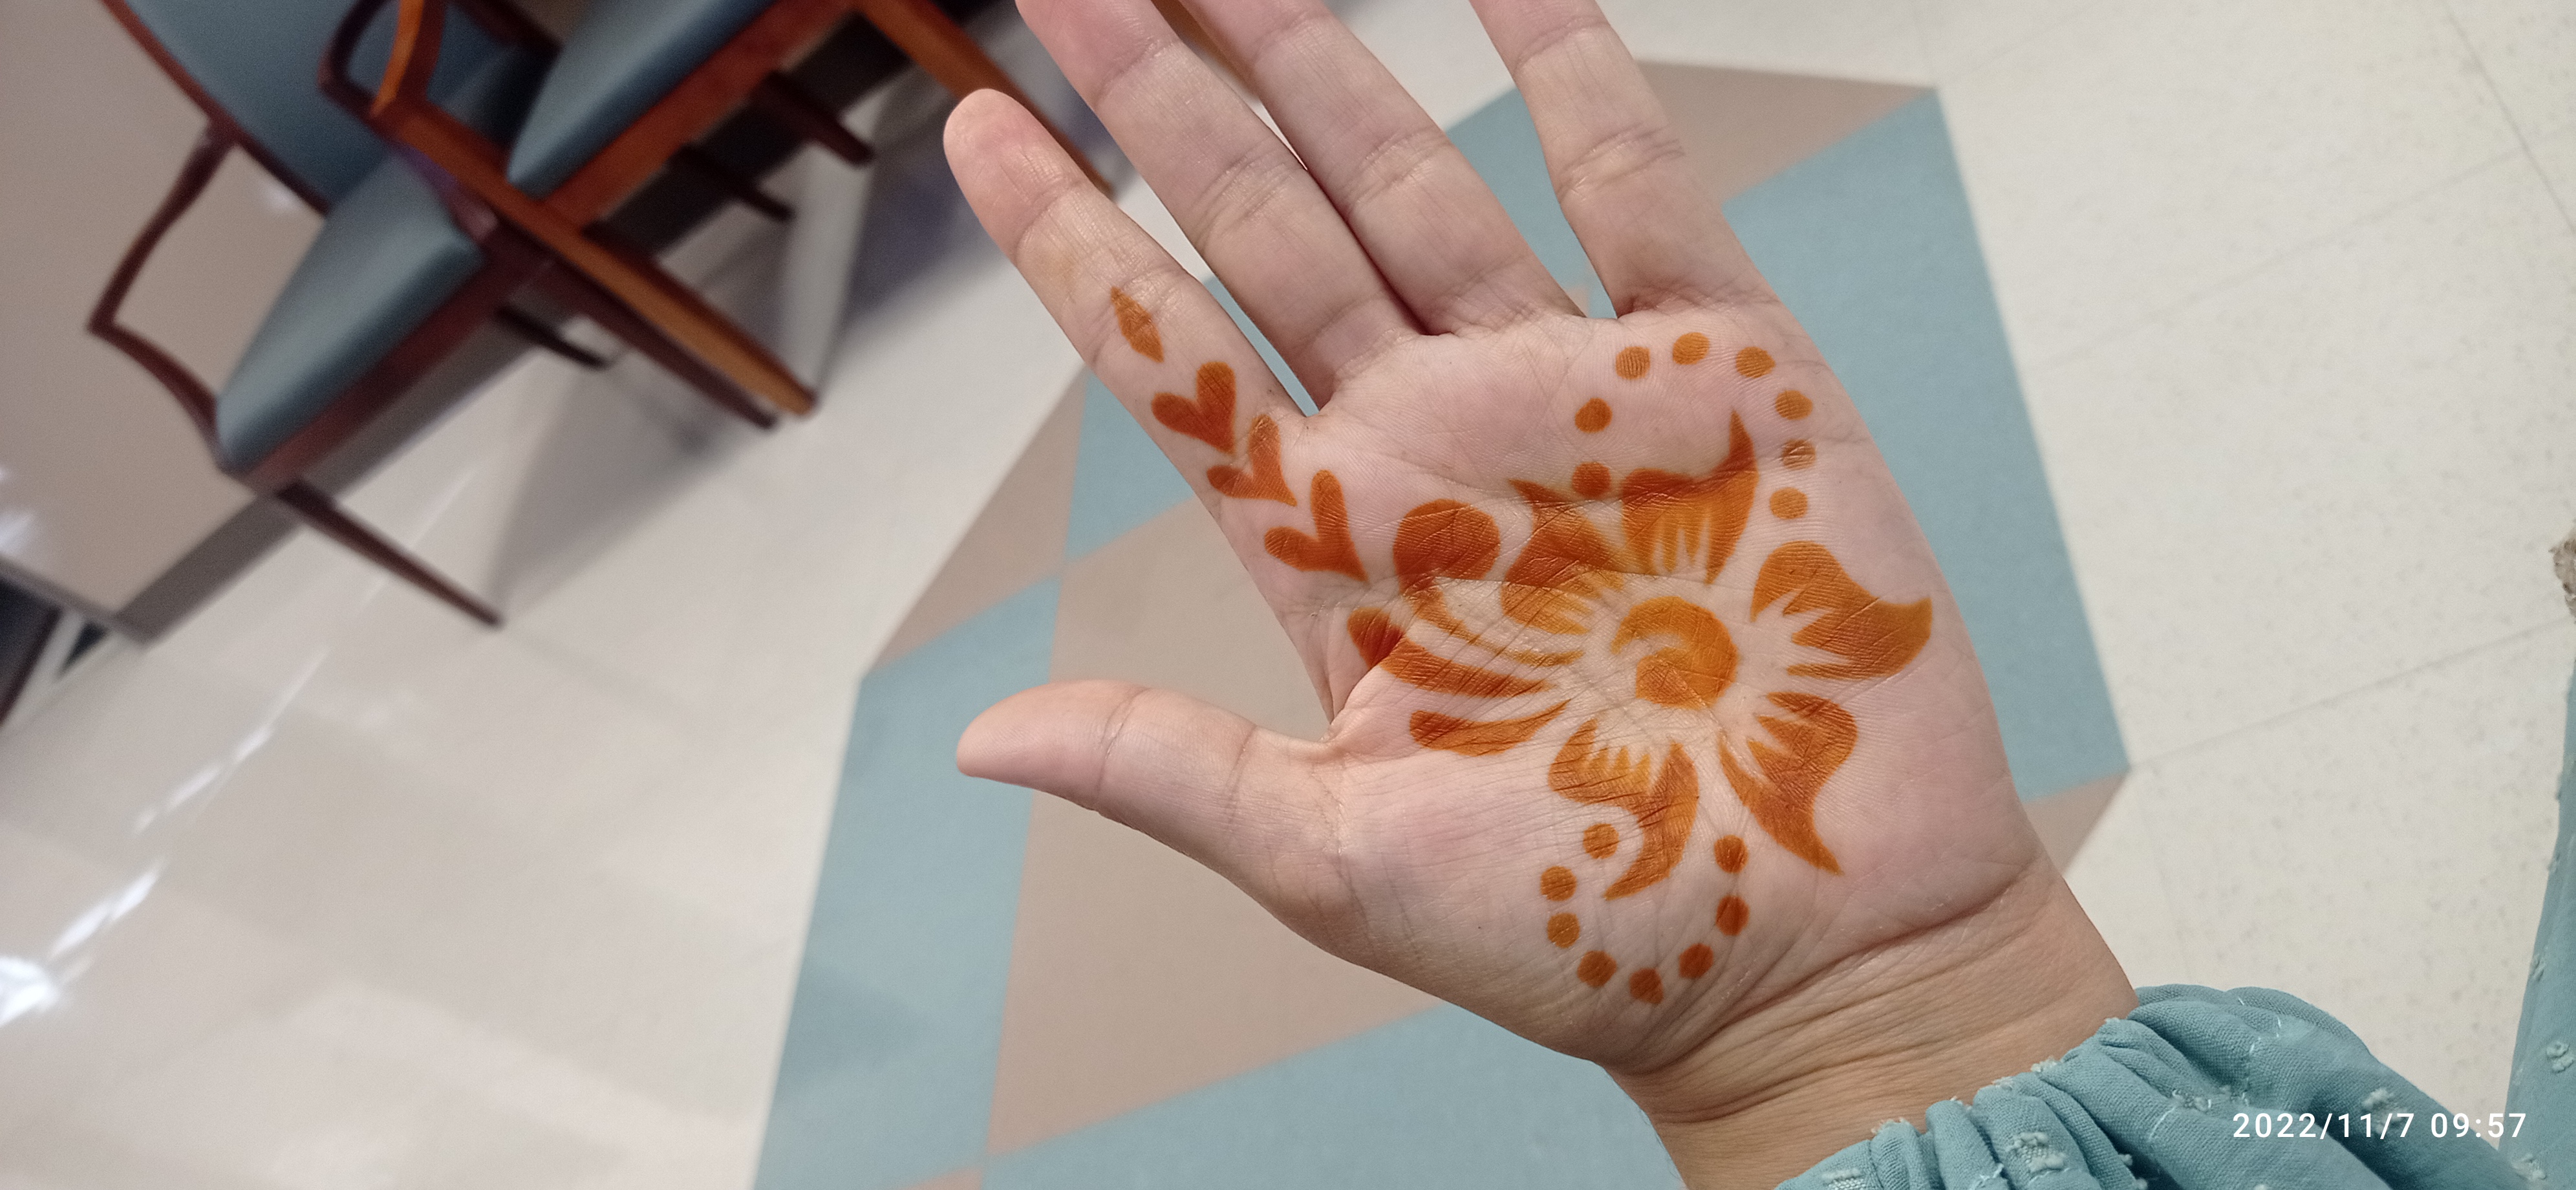 Henna Party | Nov 2022